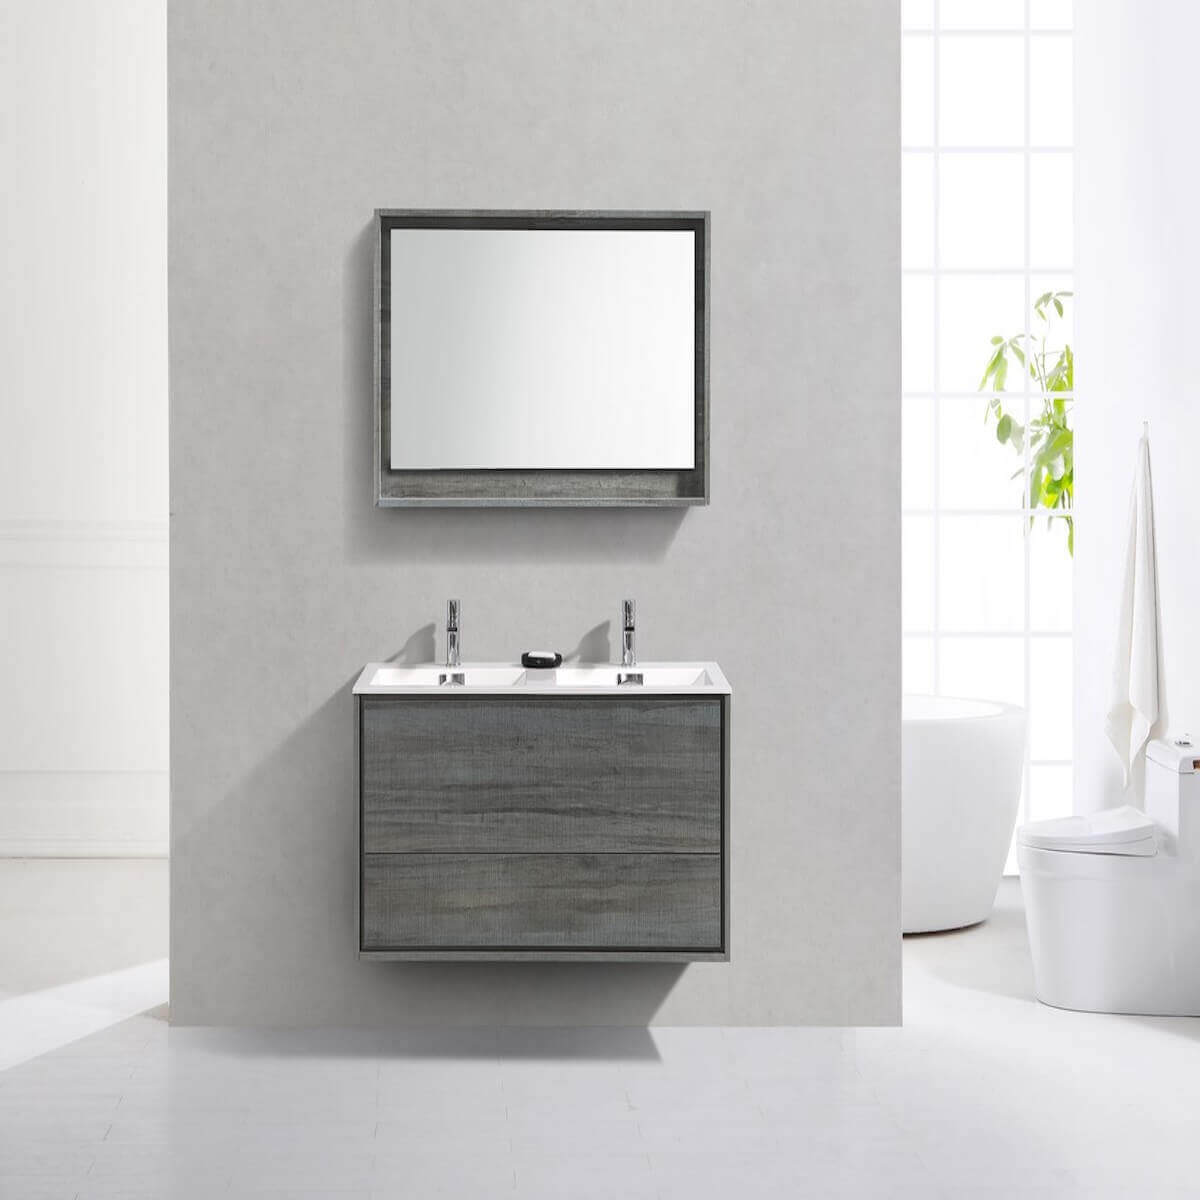 KubeBath DeLusso 48" Ocean Gray Wall Mount Double Vanity DL48D-BE in Bathroom #finish_ocean gray